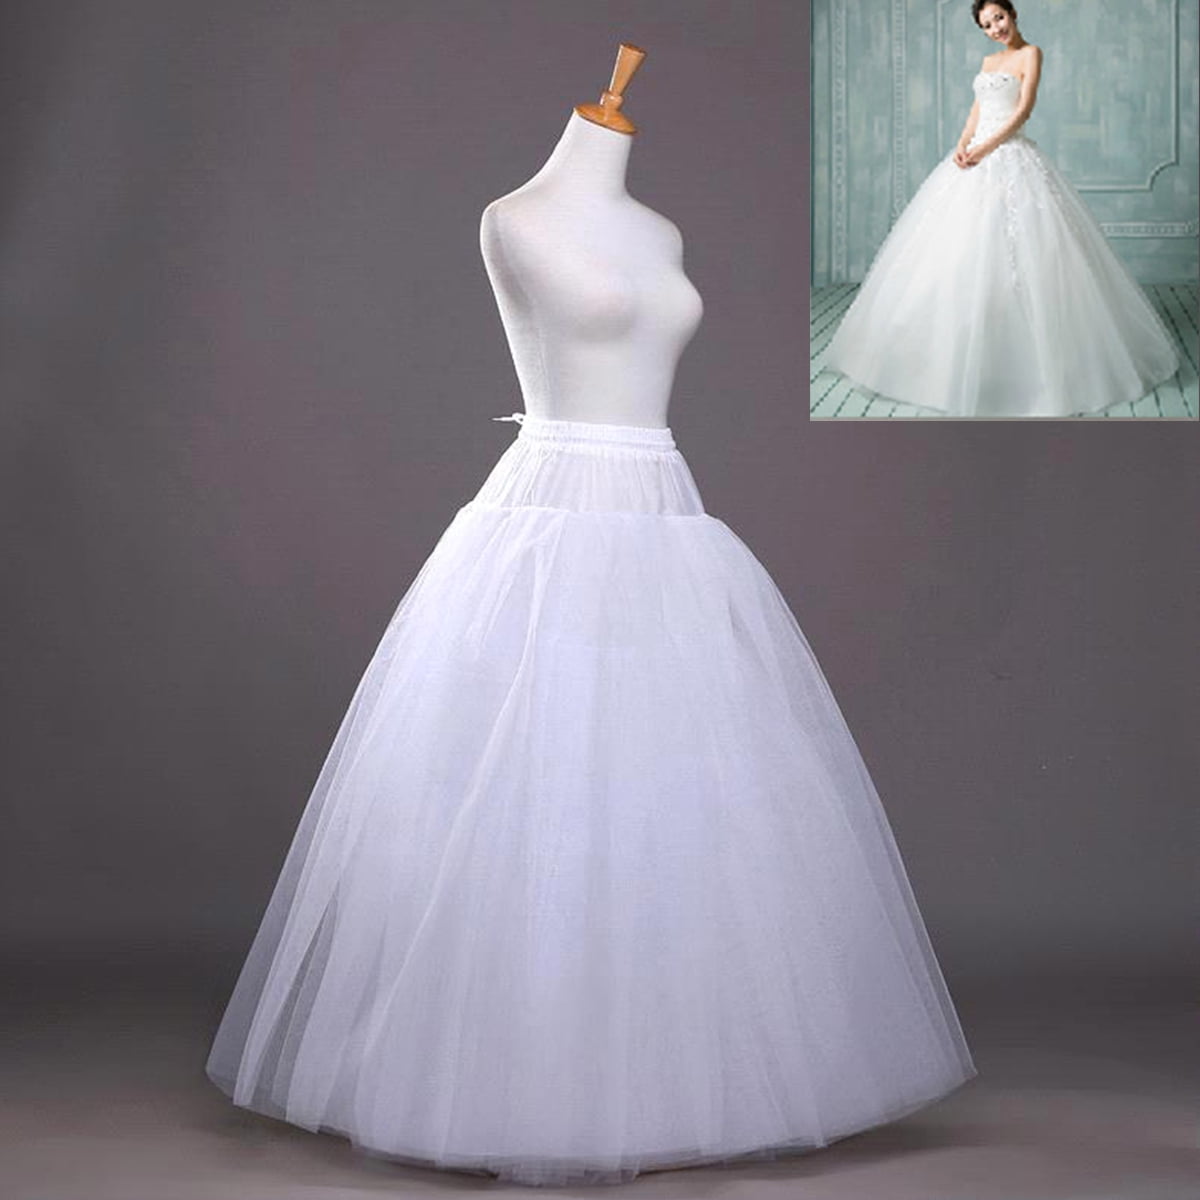 New Women Bridal Prom Petticoat Underskirt Dress Crinoline Skirt S M L XL XXL 